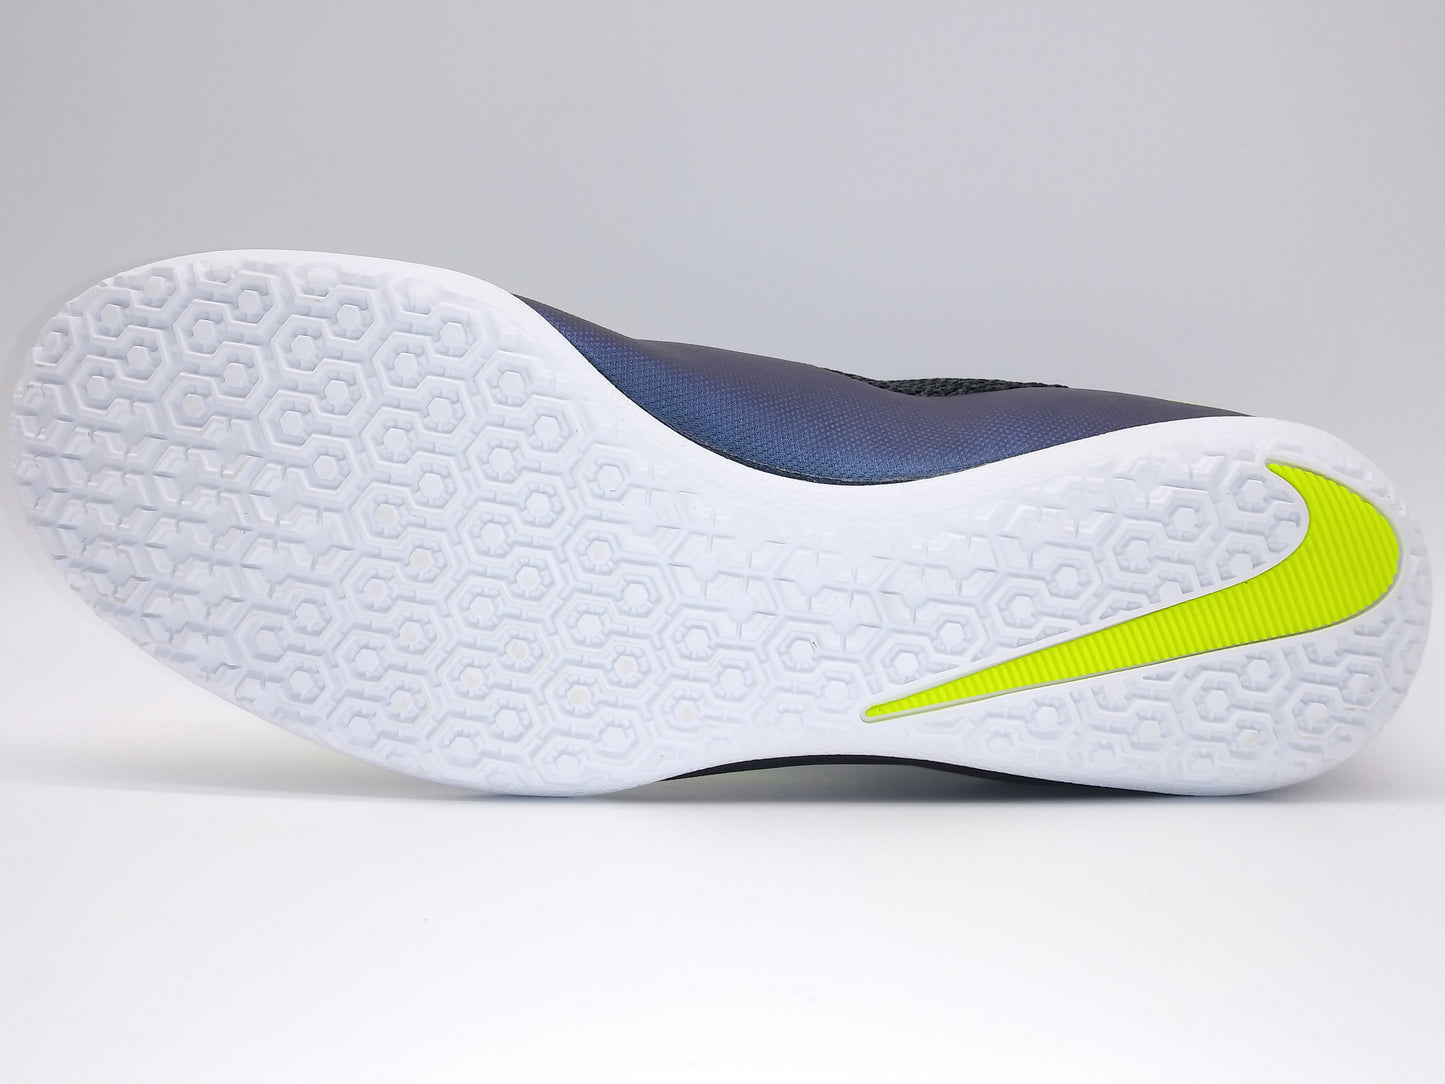 Nike MercurialX Pro IC Black Yellow